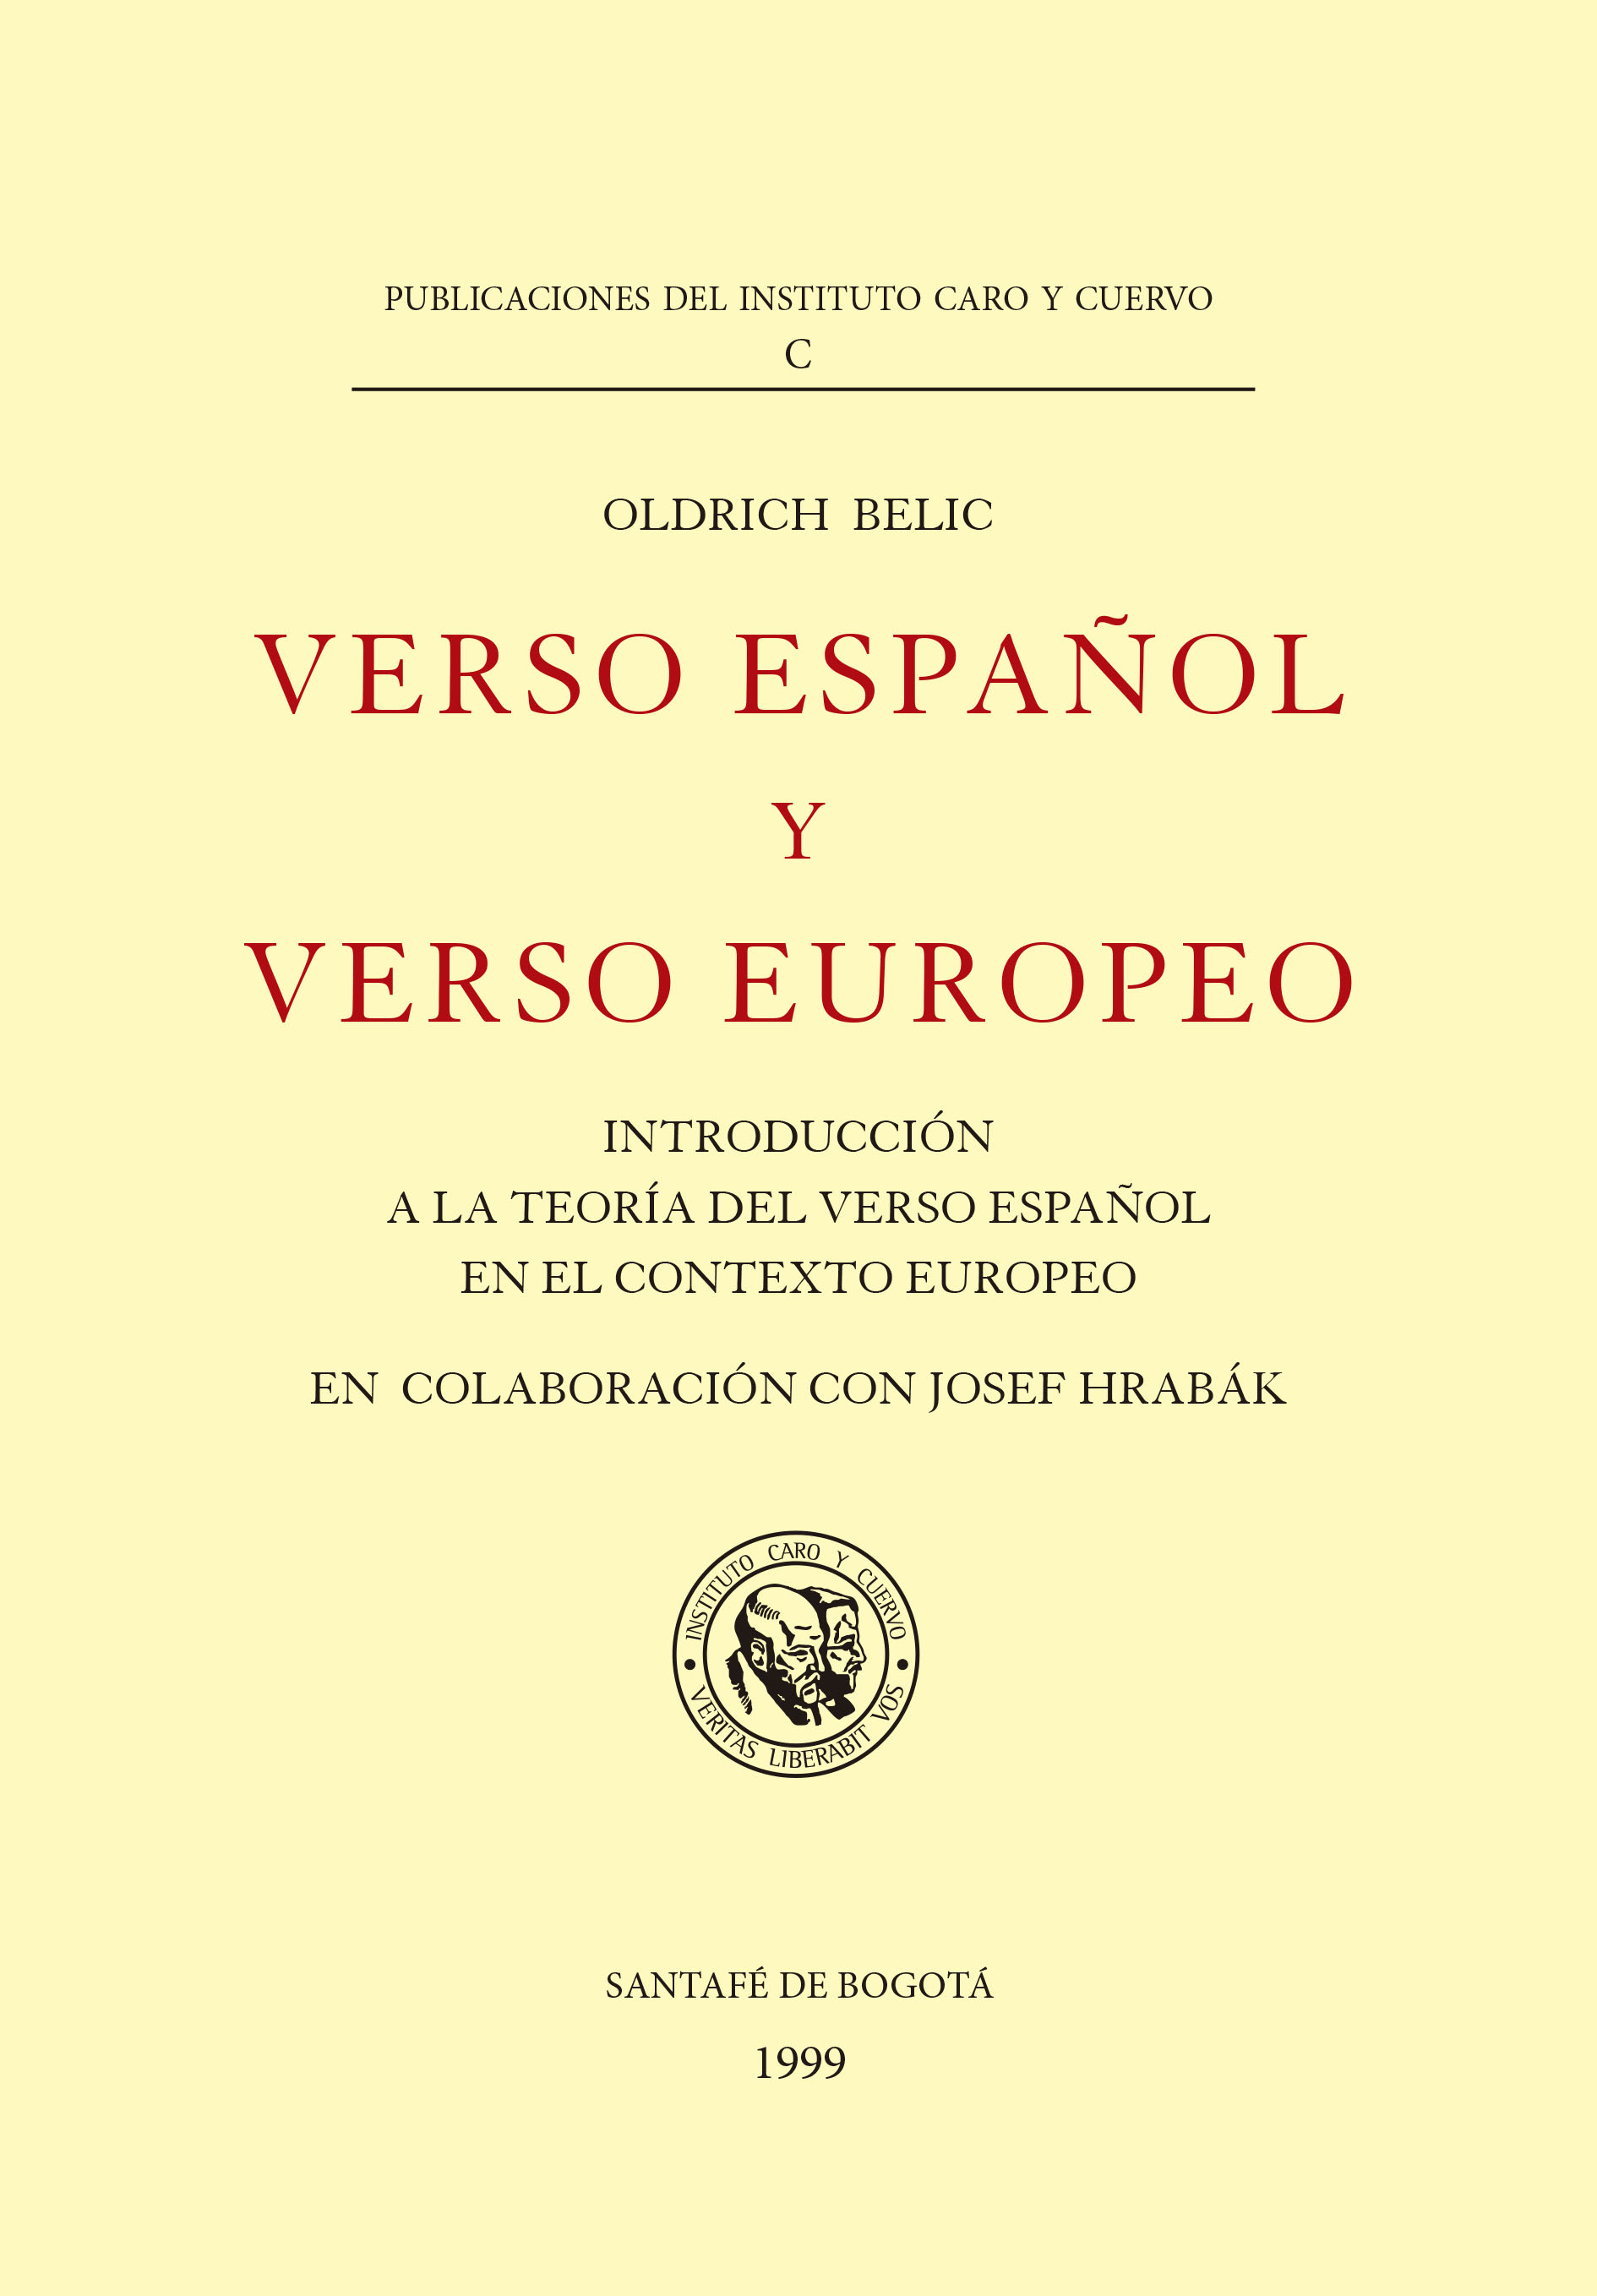 Verso español y verso europeo. Introducción a la teoría del verso español con el contexto europeo